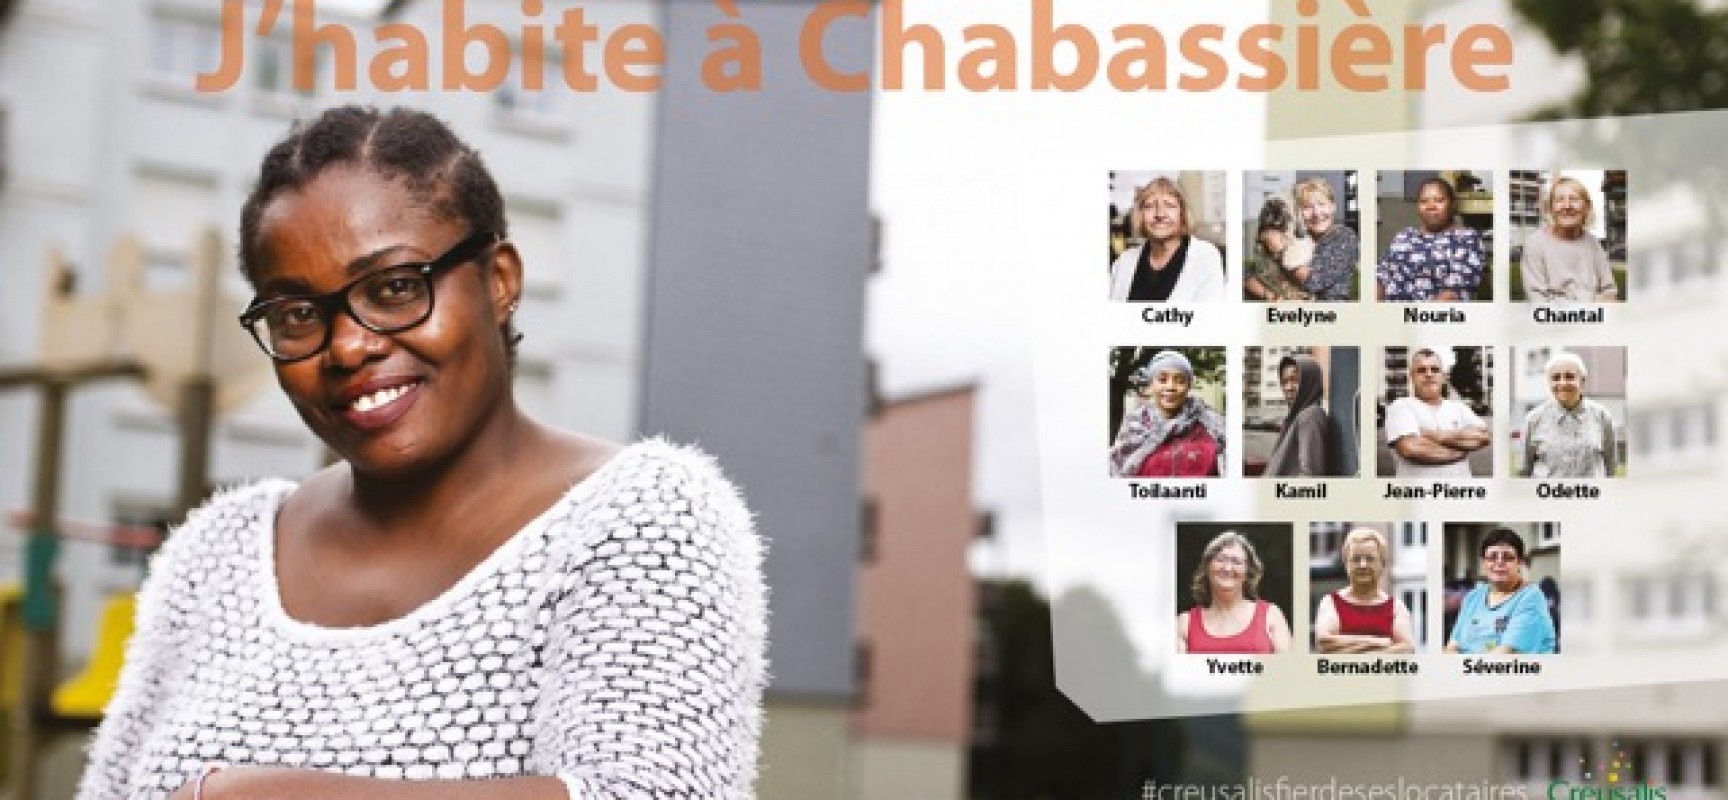 Expo – « Le vrai visage de Chabassière » #Aubusson #Sept2017